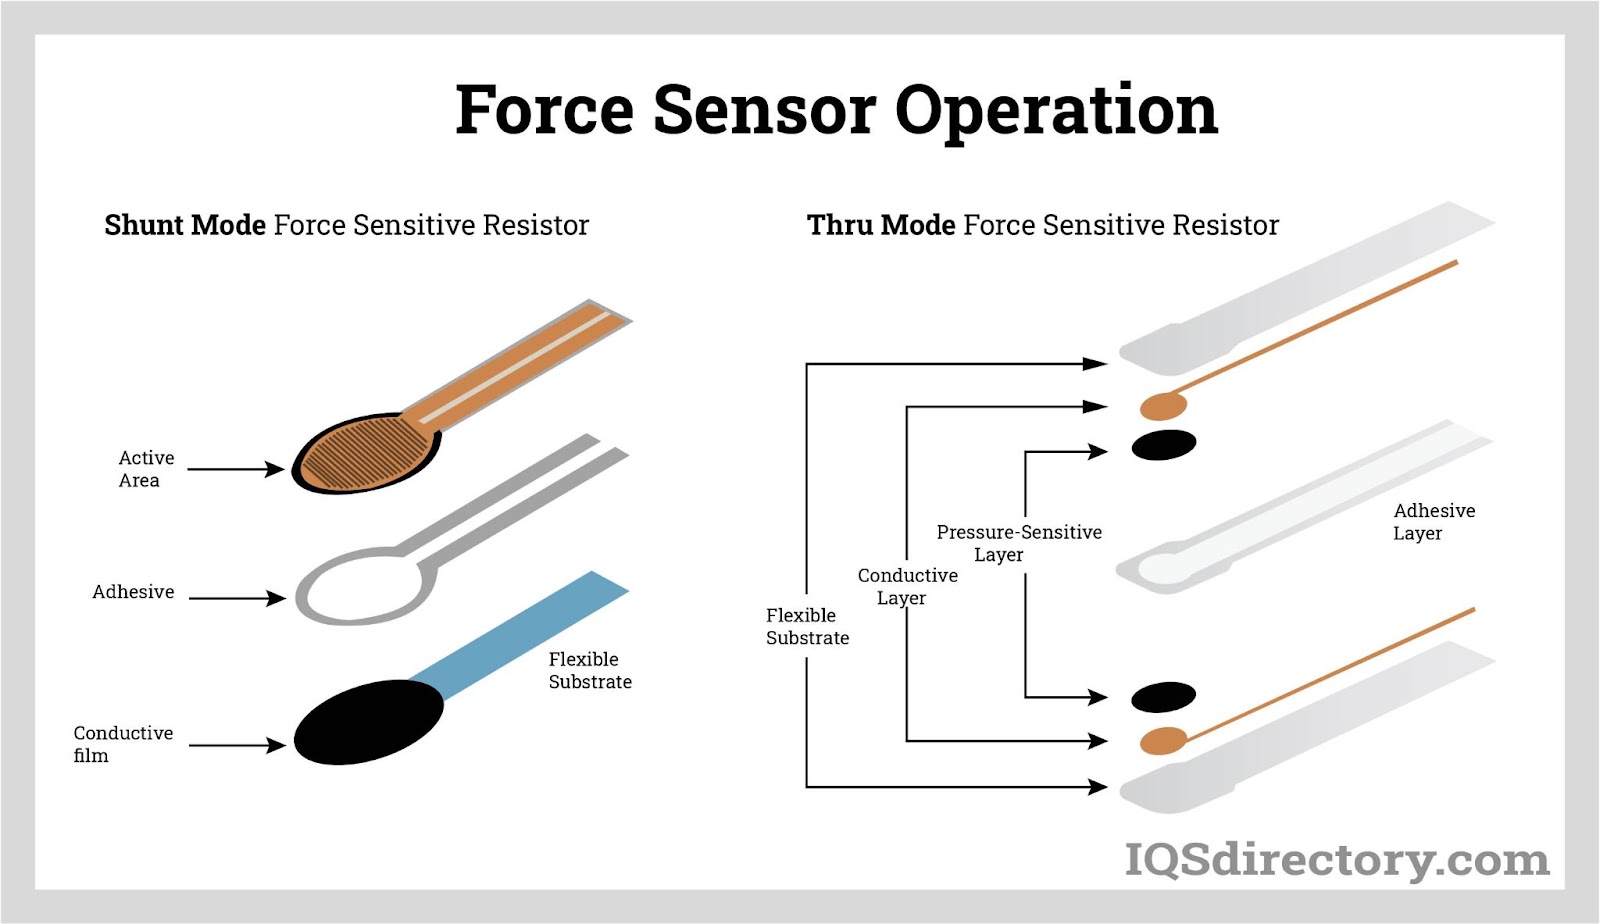 Force Sensor Operation